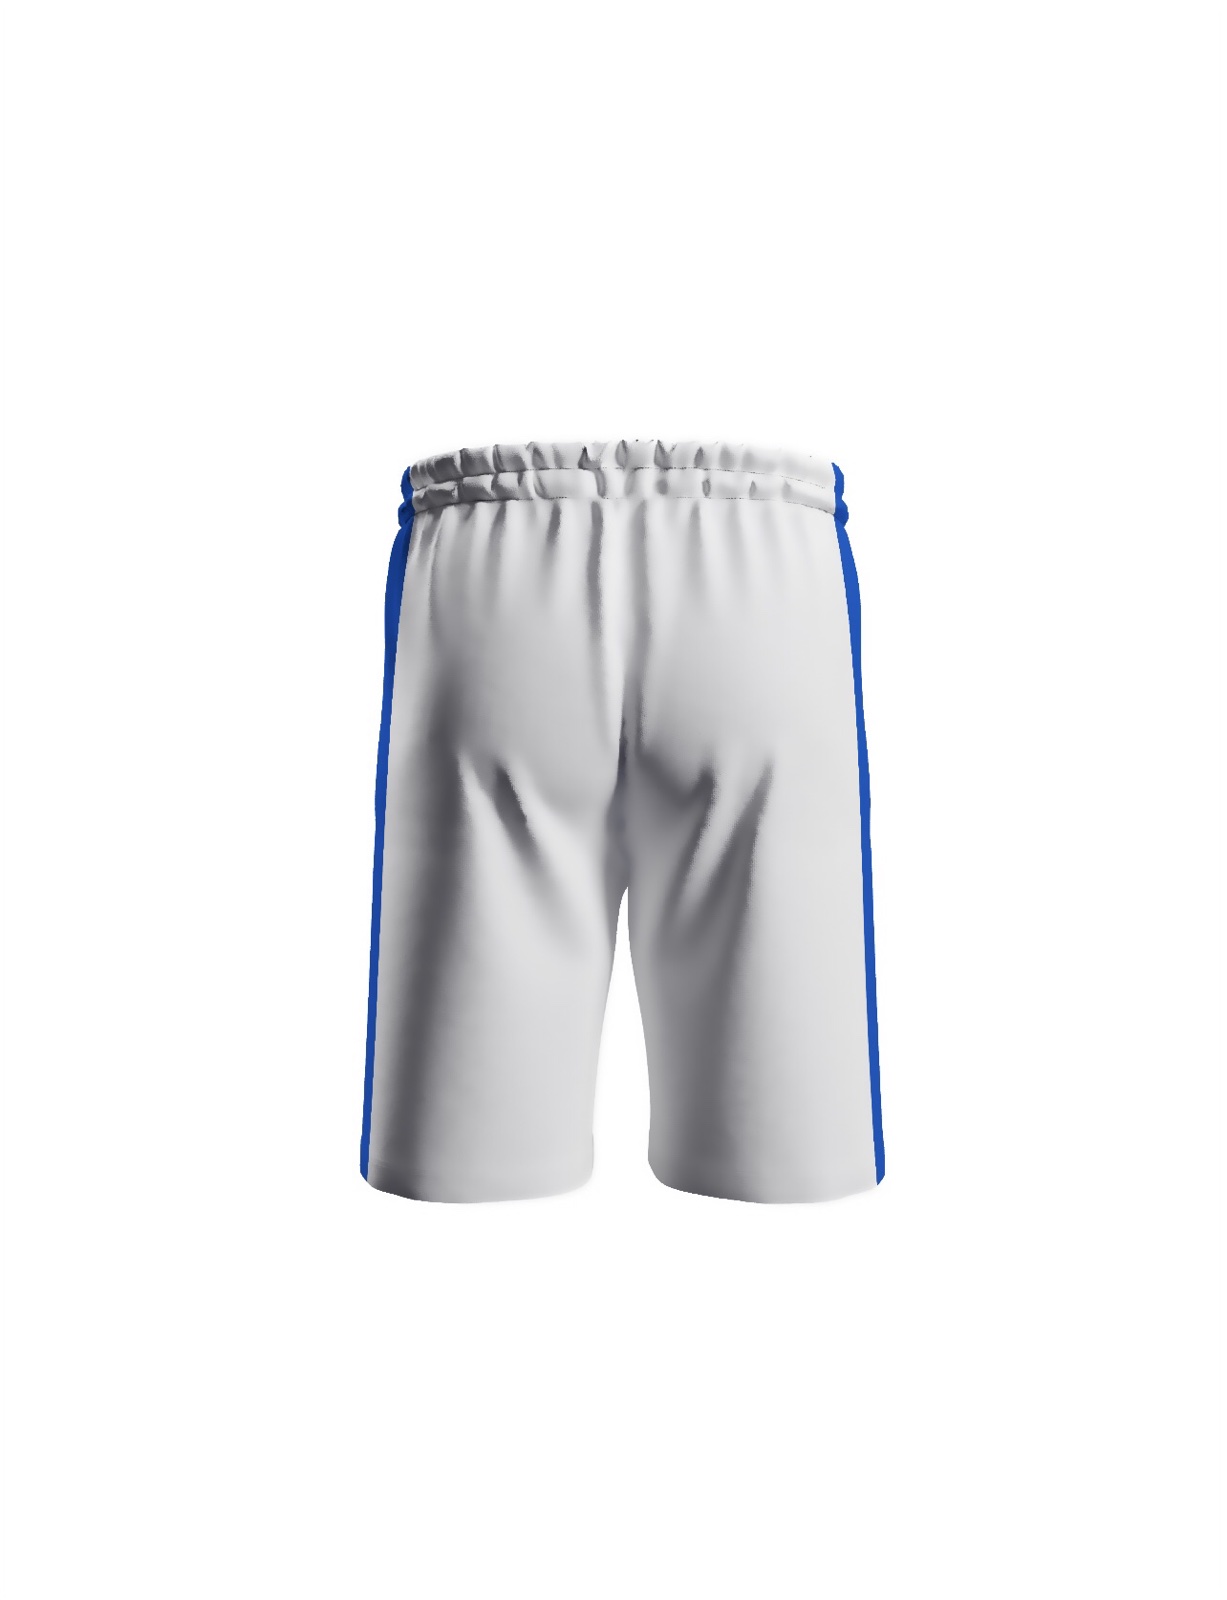 Dynamo Kyiv white uniform